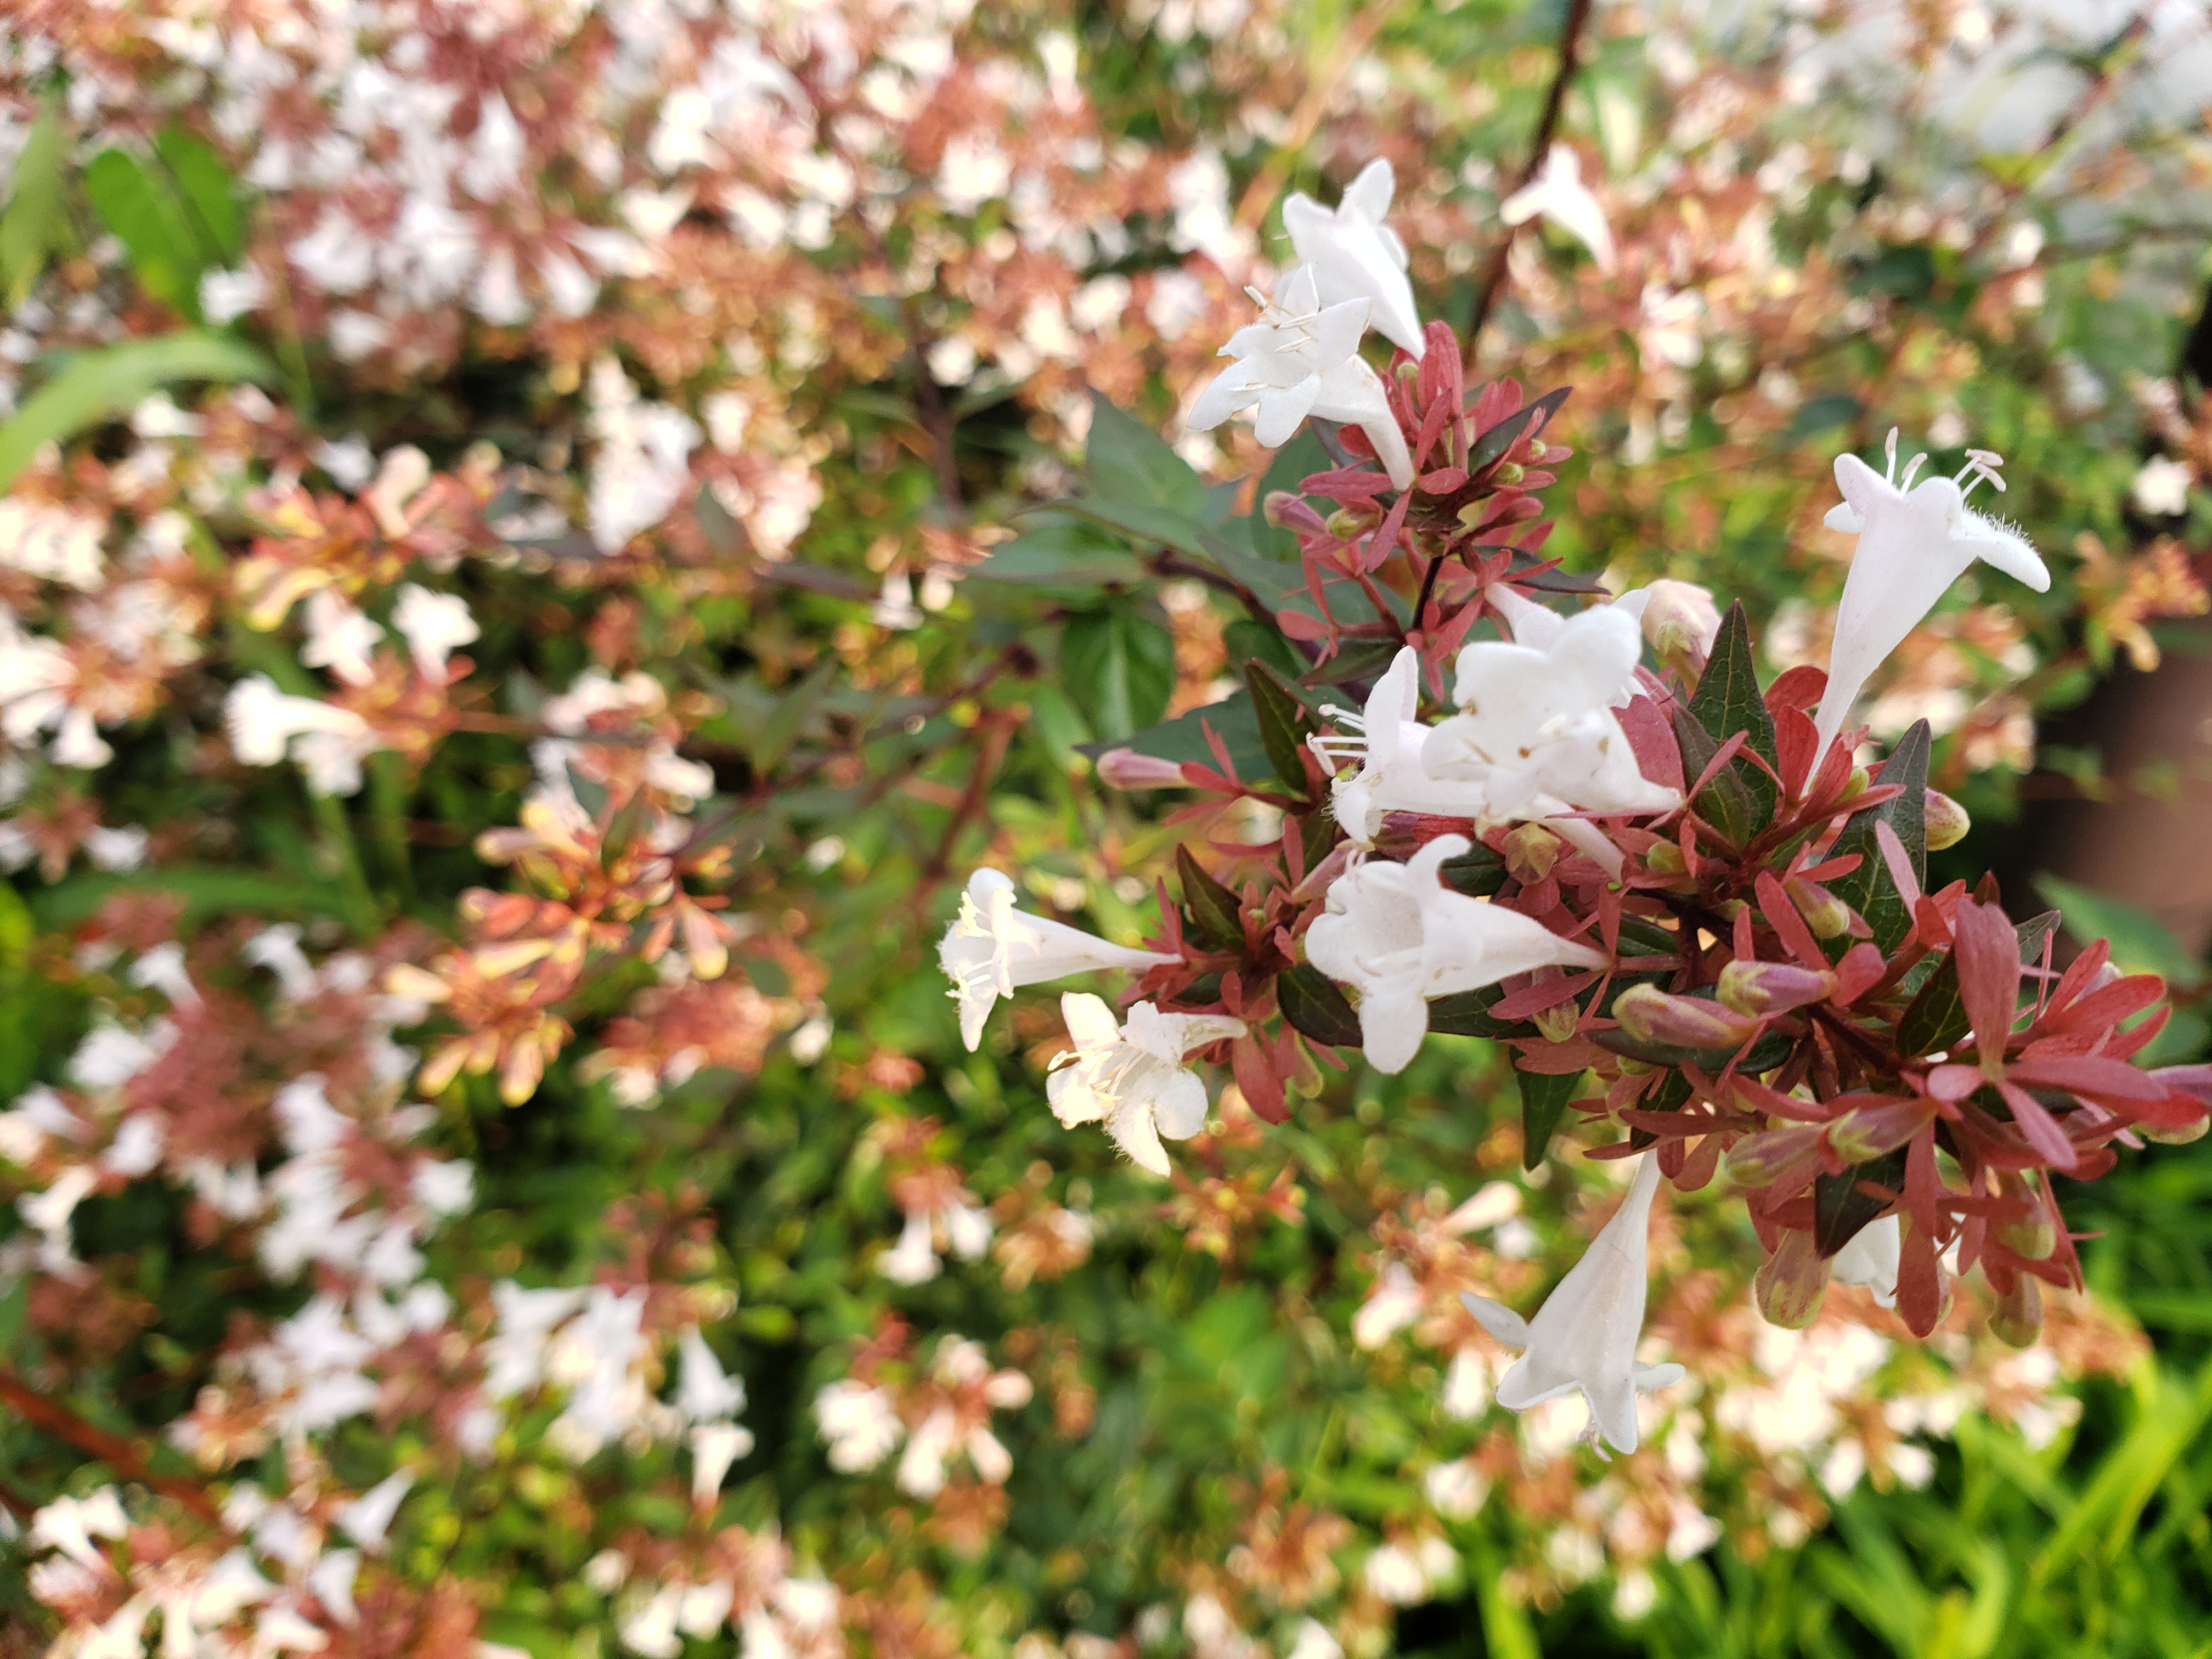 今日の花は ツクバネウツギ 衝羽根空木 アベリア です 九和楽ブログ 土産 通販 九度山 慈尊院 真田庵のほど近く